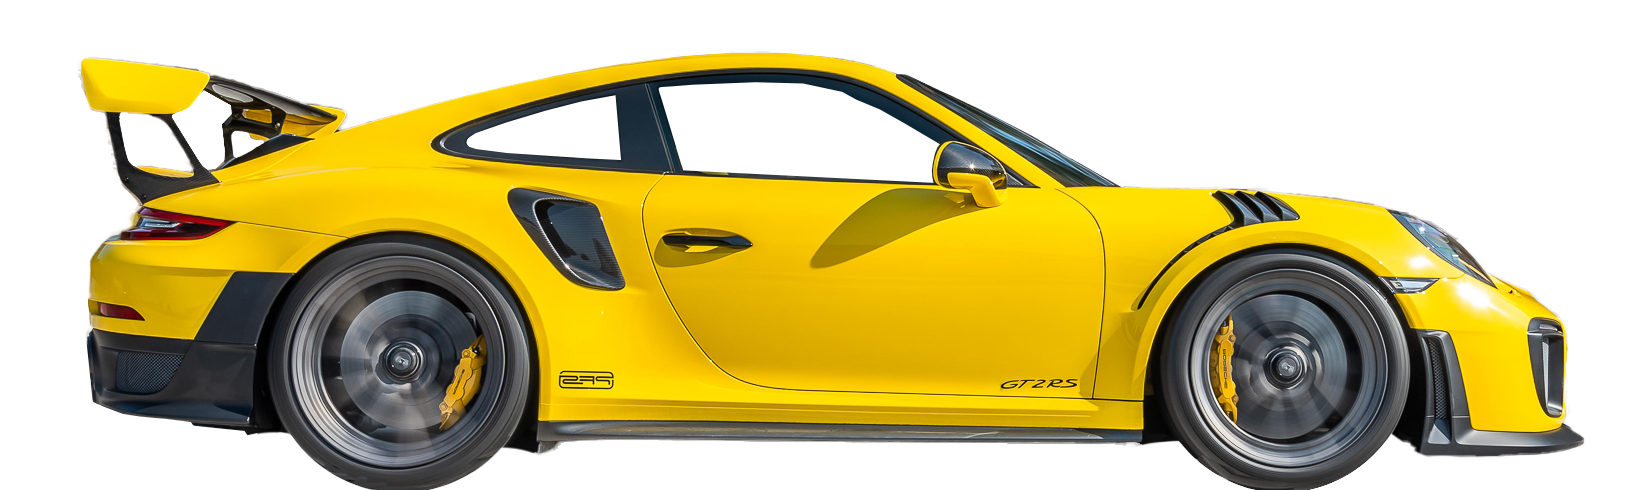 Drive Supercars in Las Vegas   - Porsche 991 GT3 RS